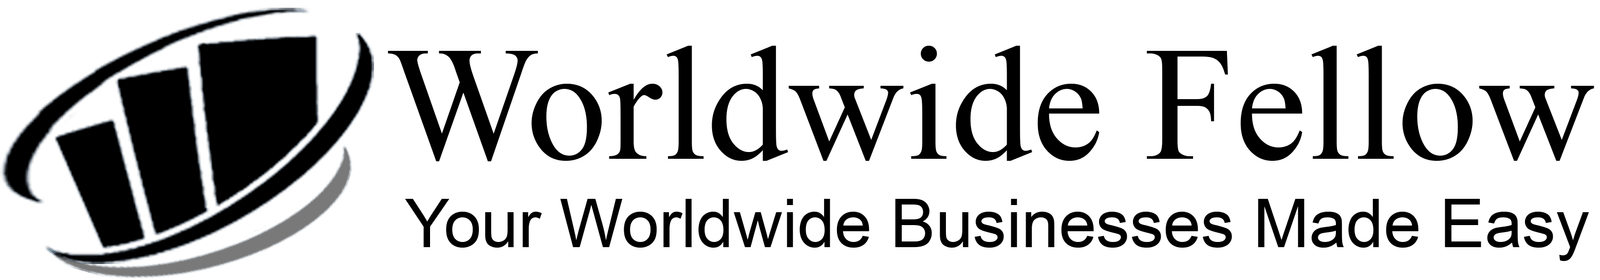 Worldwide Fellow logo